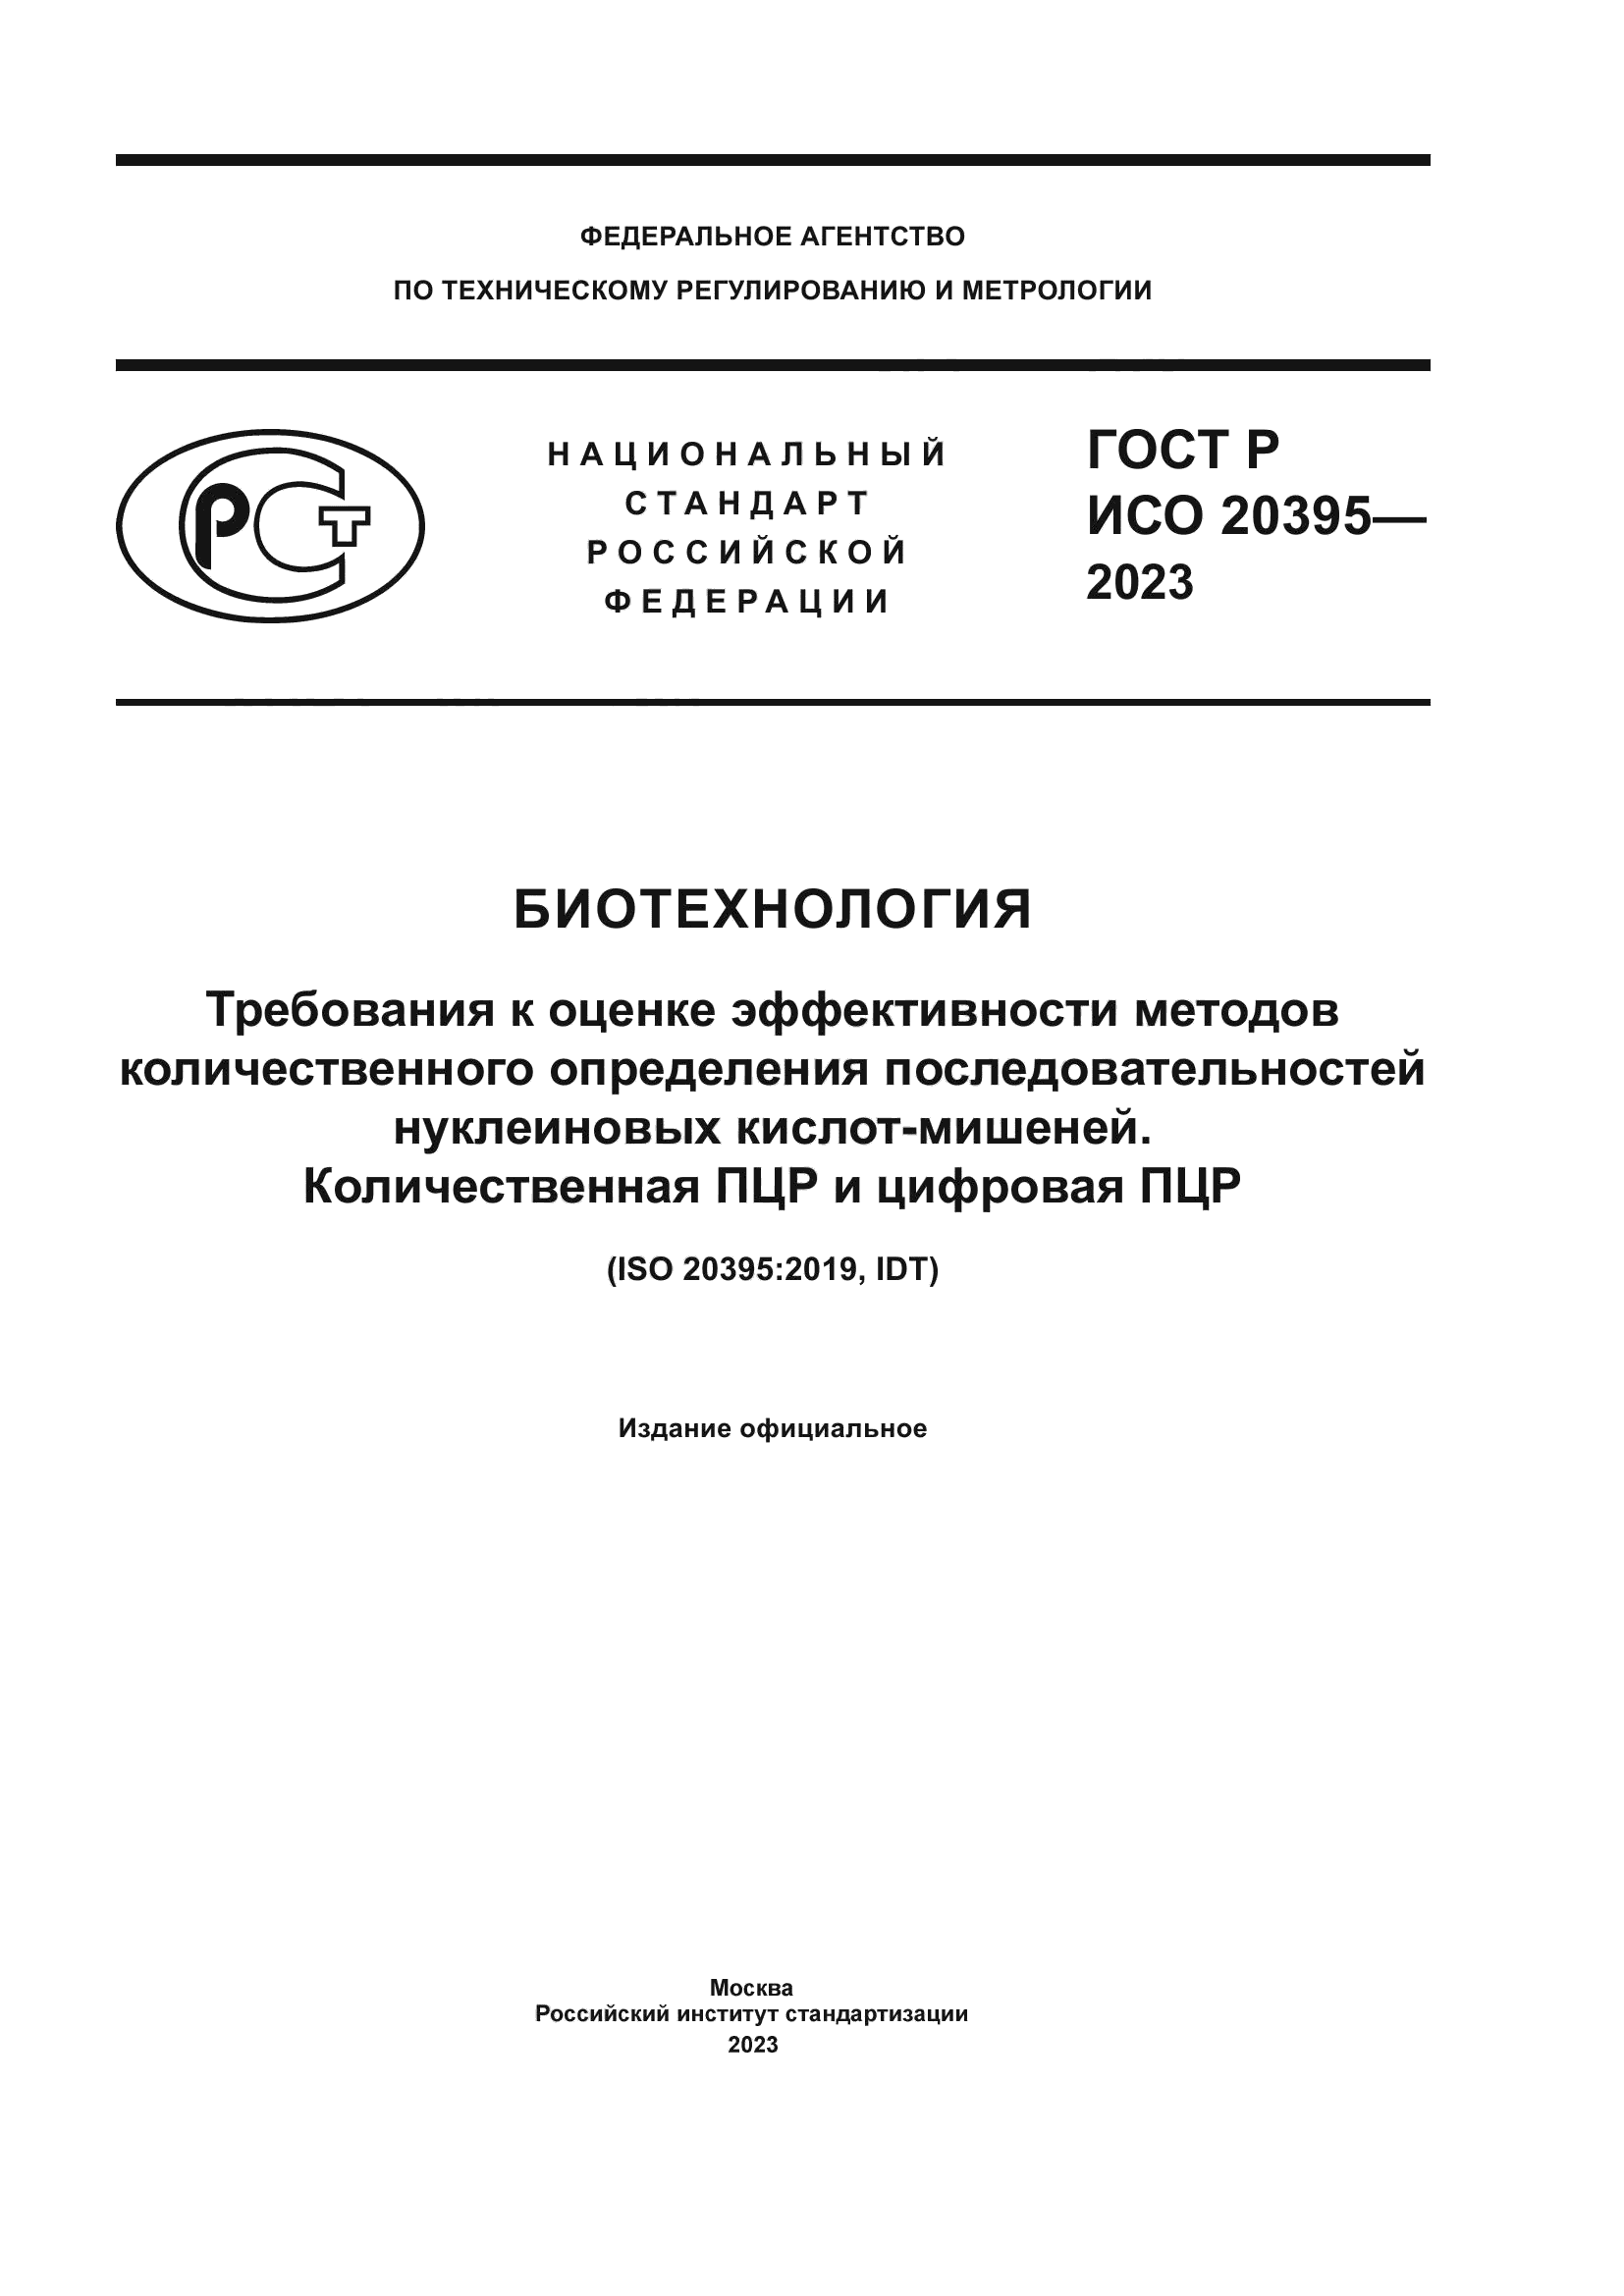 ГОСТ Р ИСО 20395-2023